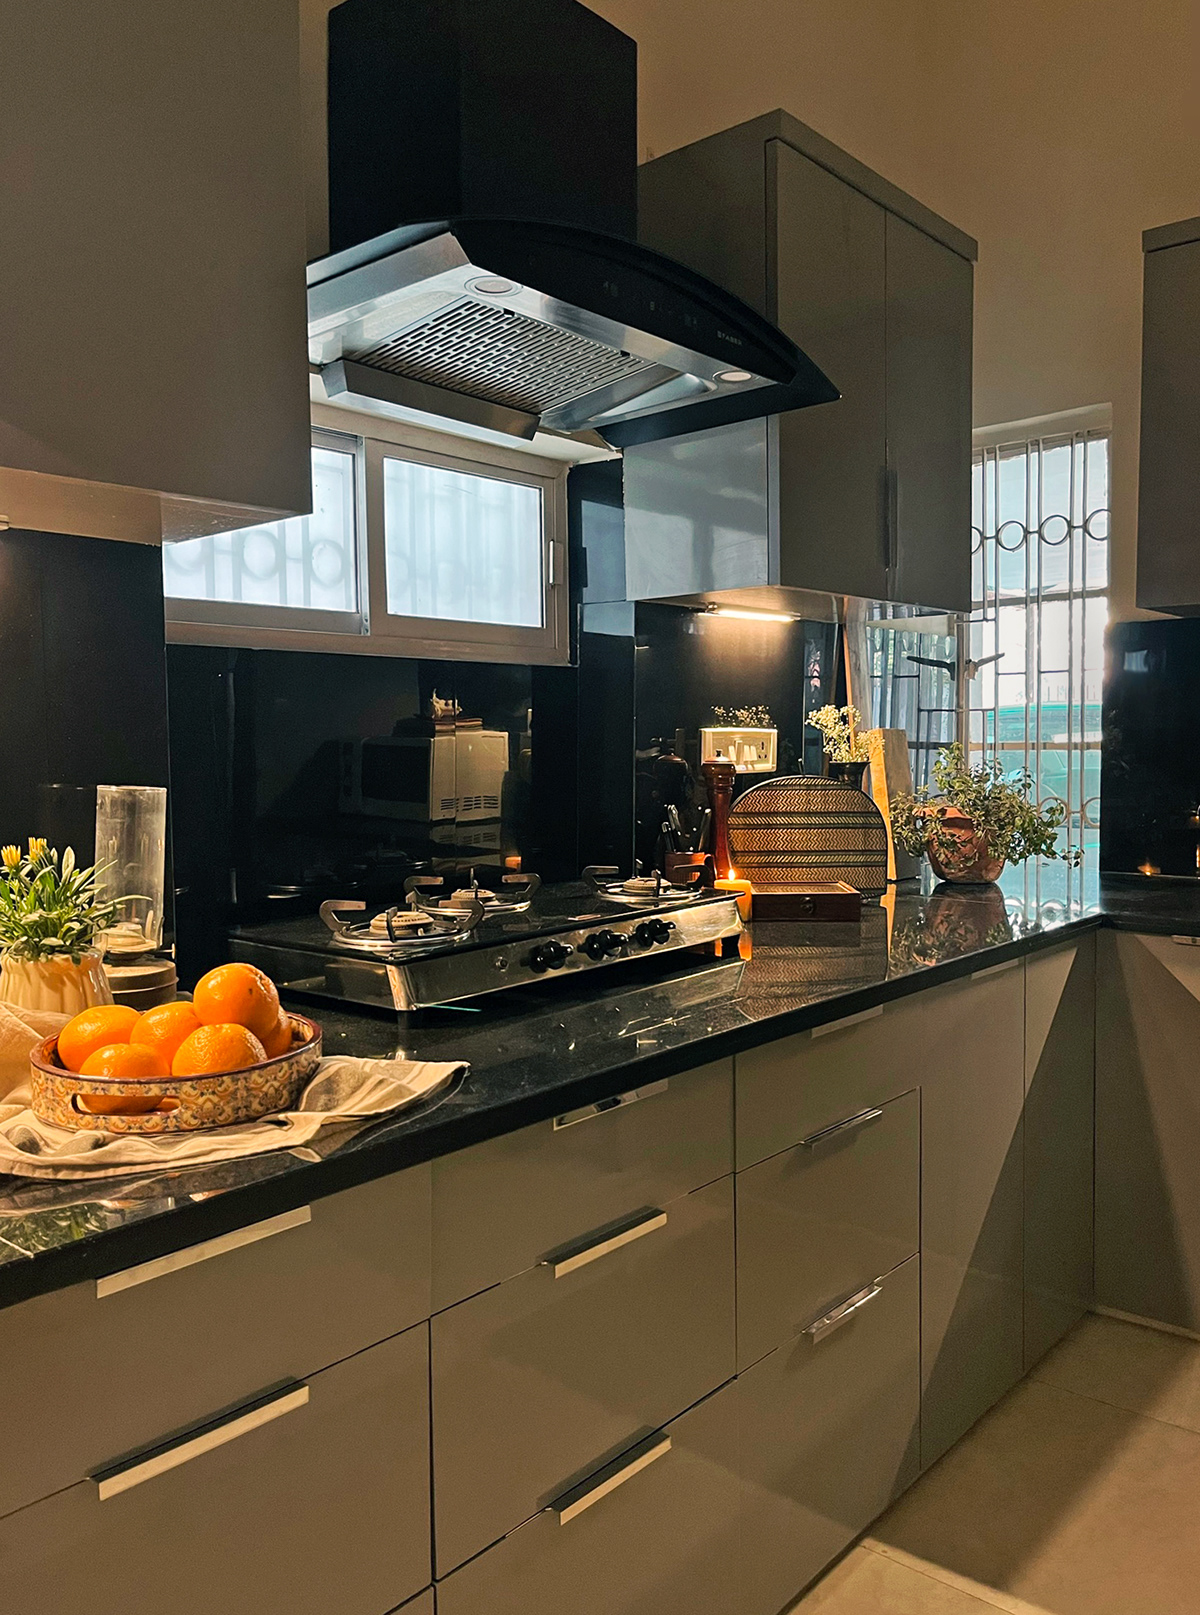 3D architecture designer interior design  kitchen kitchen design kitchendecor Mid Century modern minimal modern